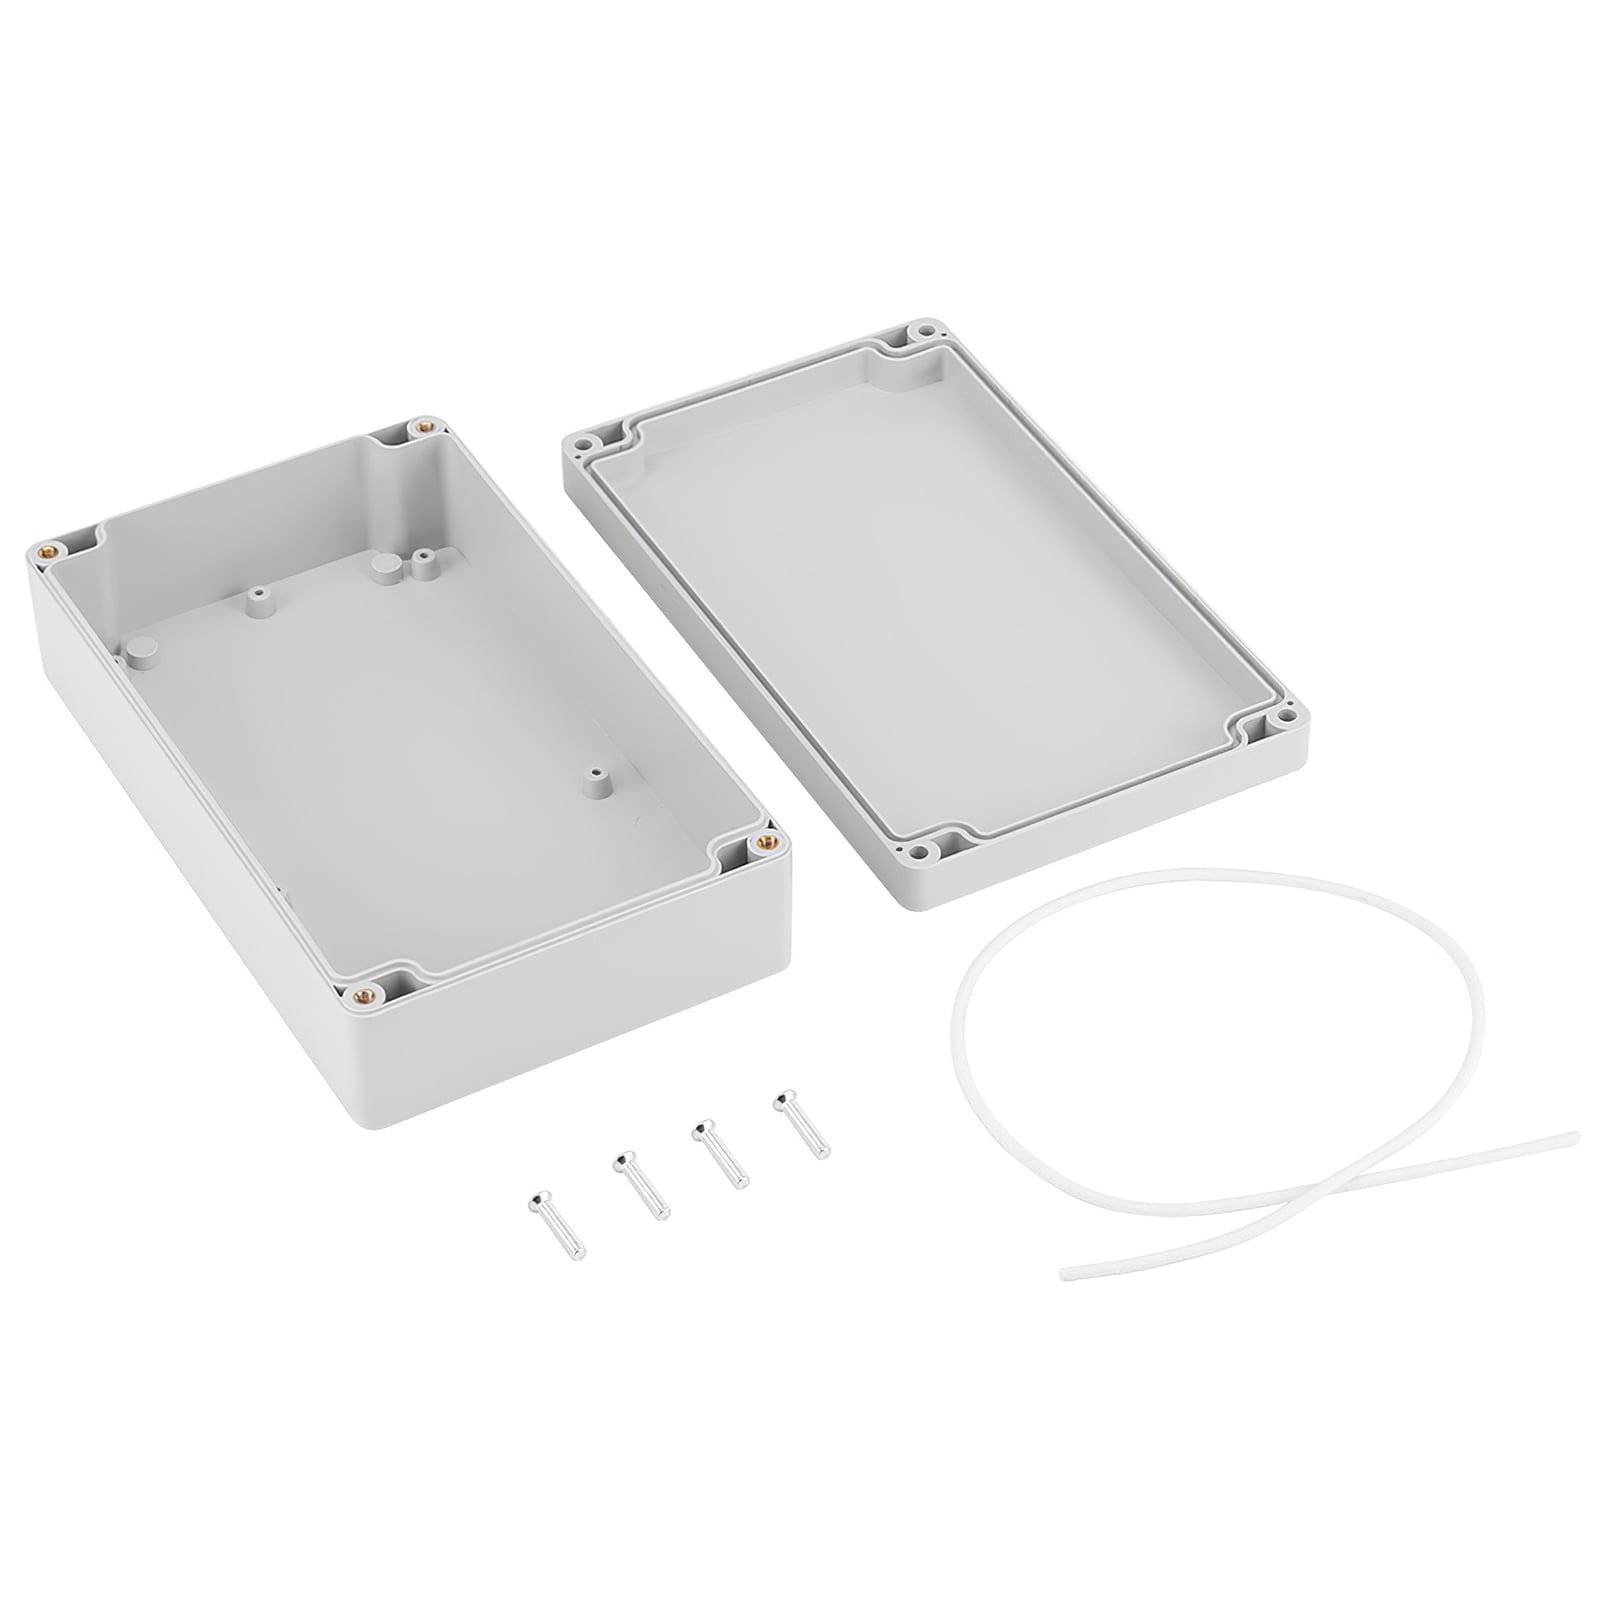 IP65 Waterproof Plastic Enclosure Case Power Junction Box Weatherproof 